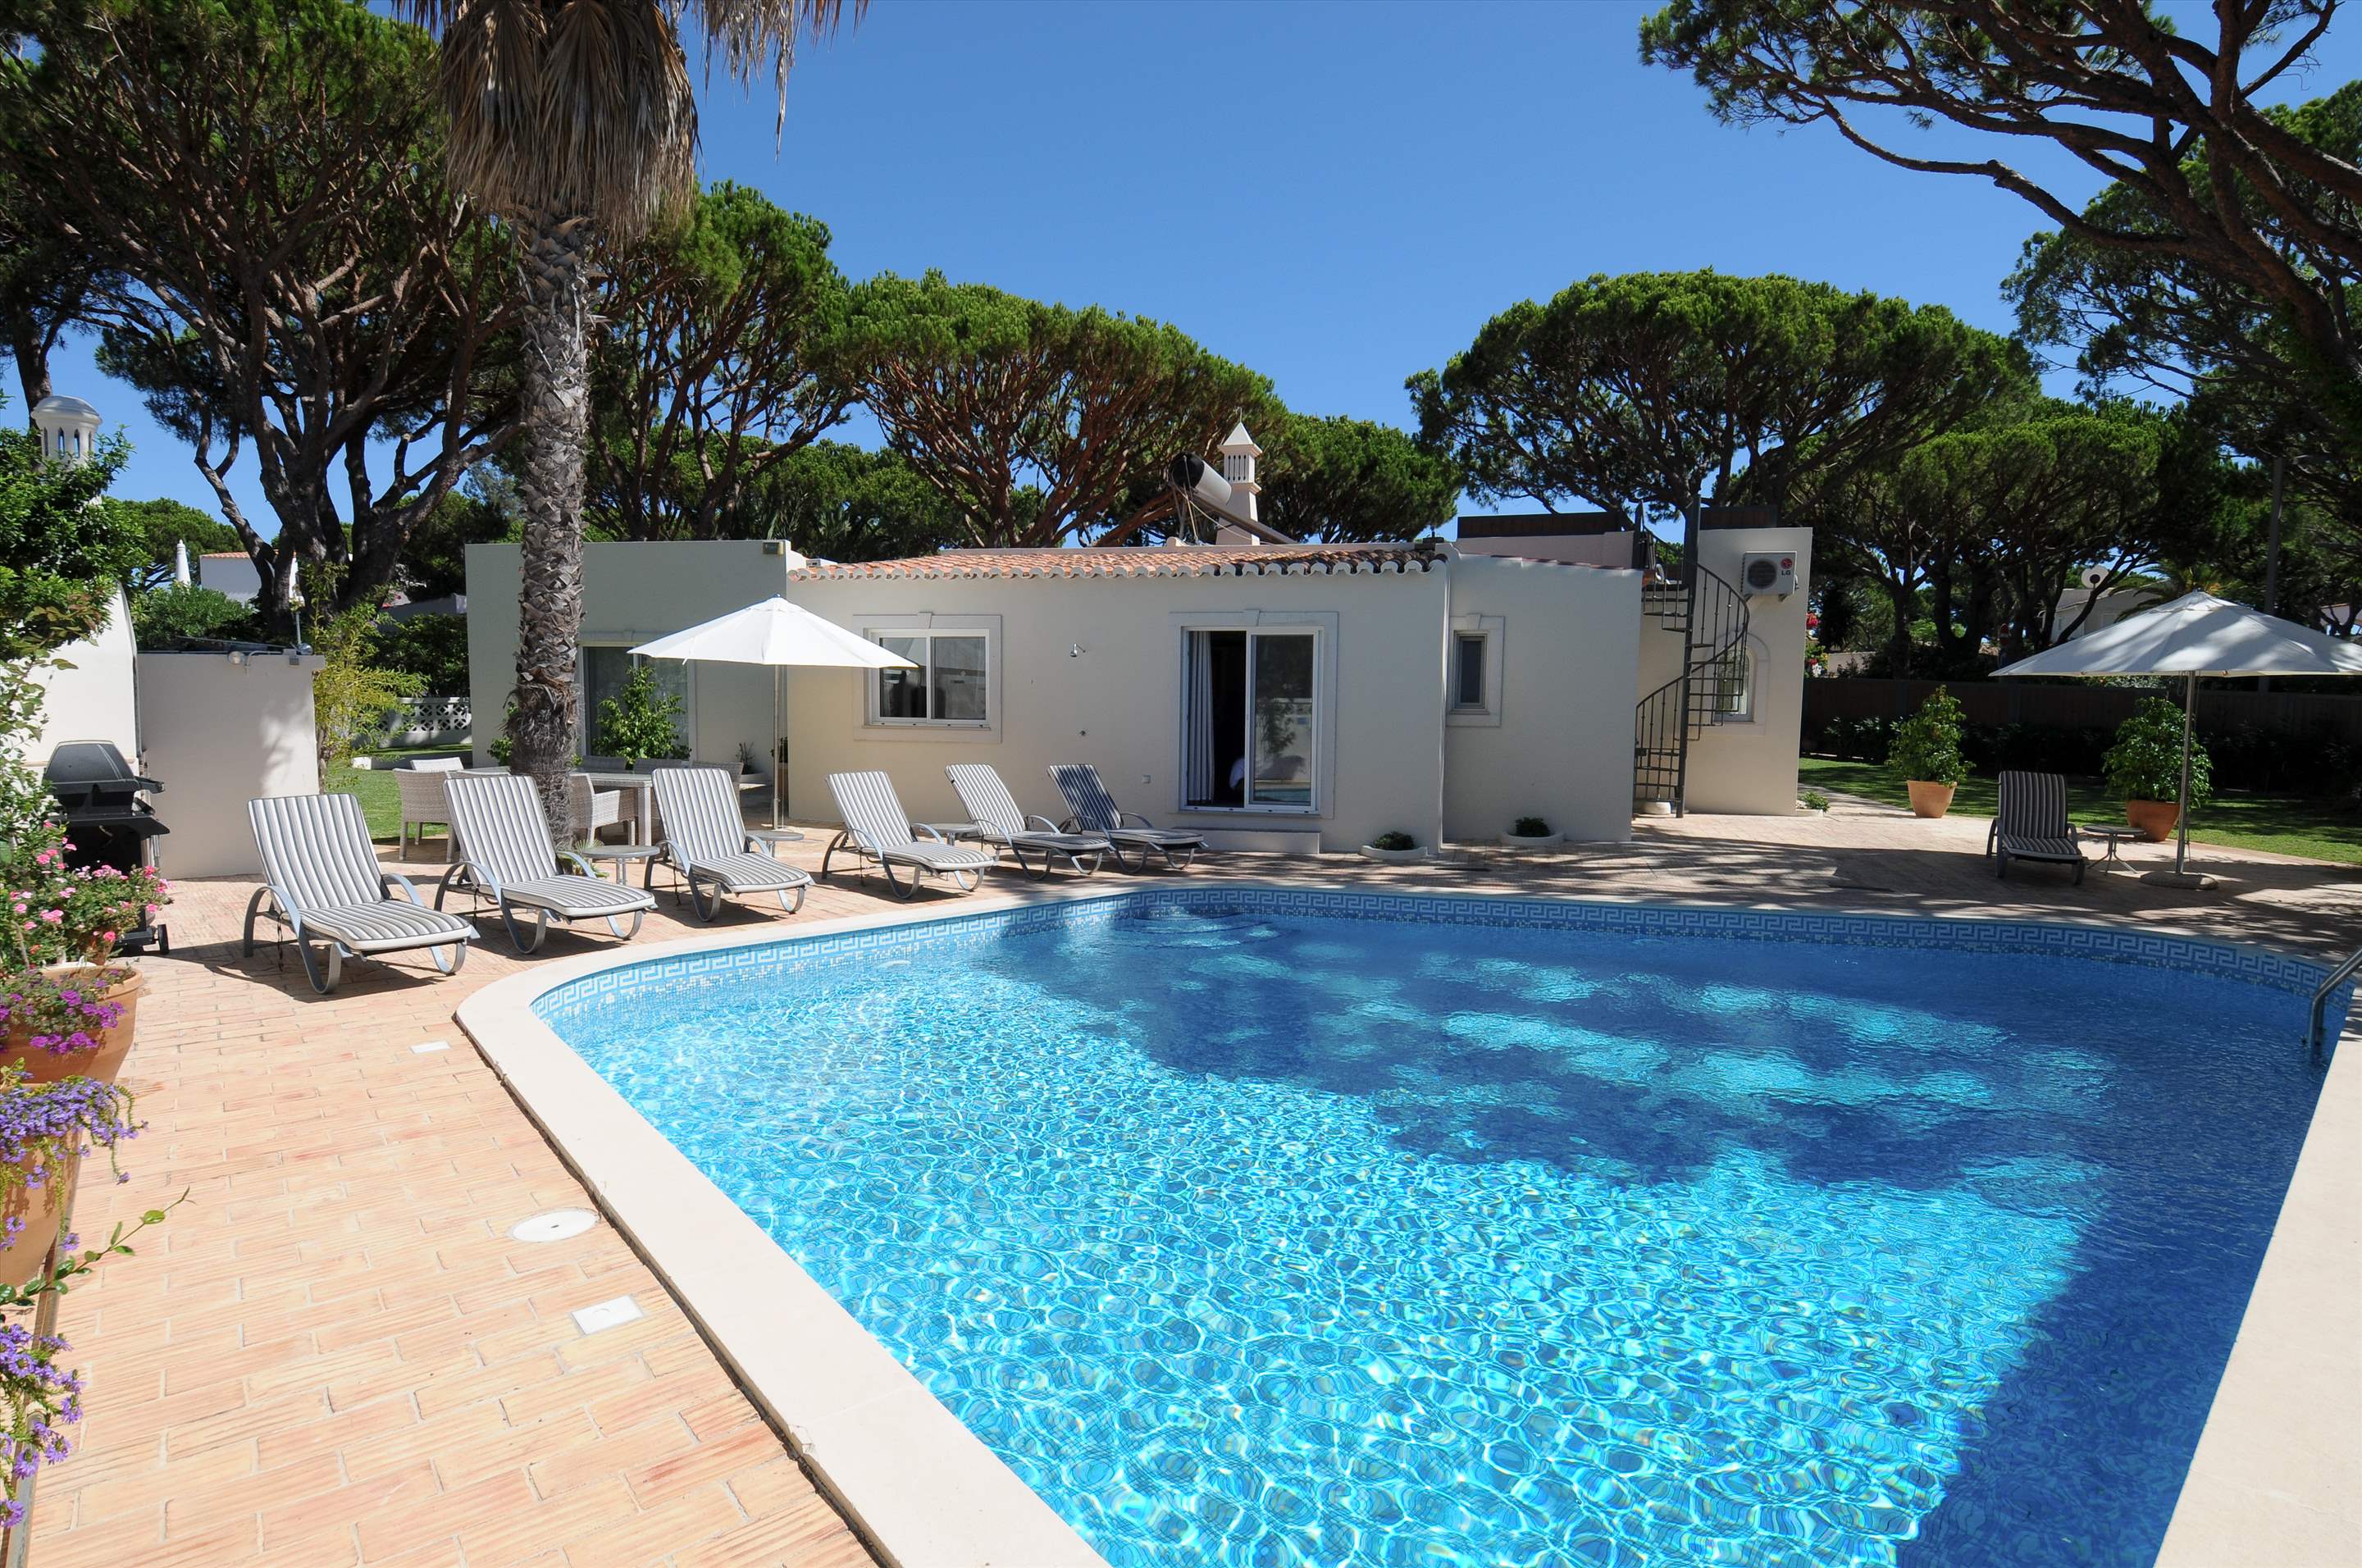 Casa Blanca, 4 Bed Rental, 4 bedroom villa in Vale do Lobo, Algarve